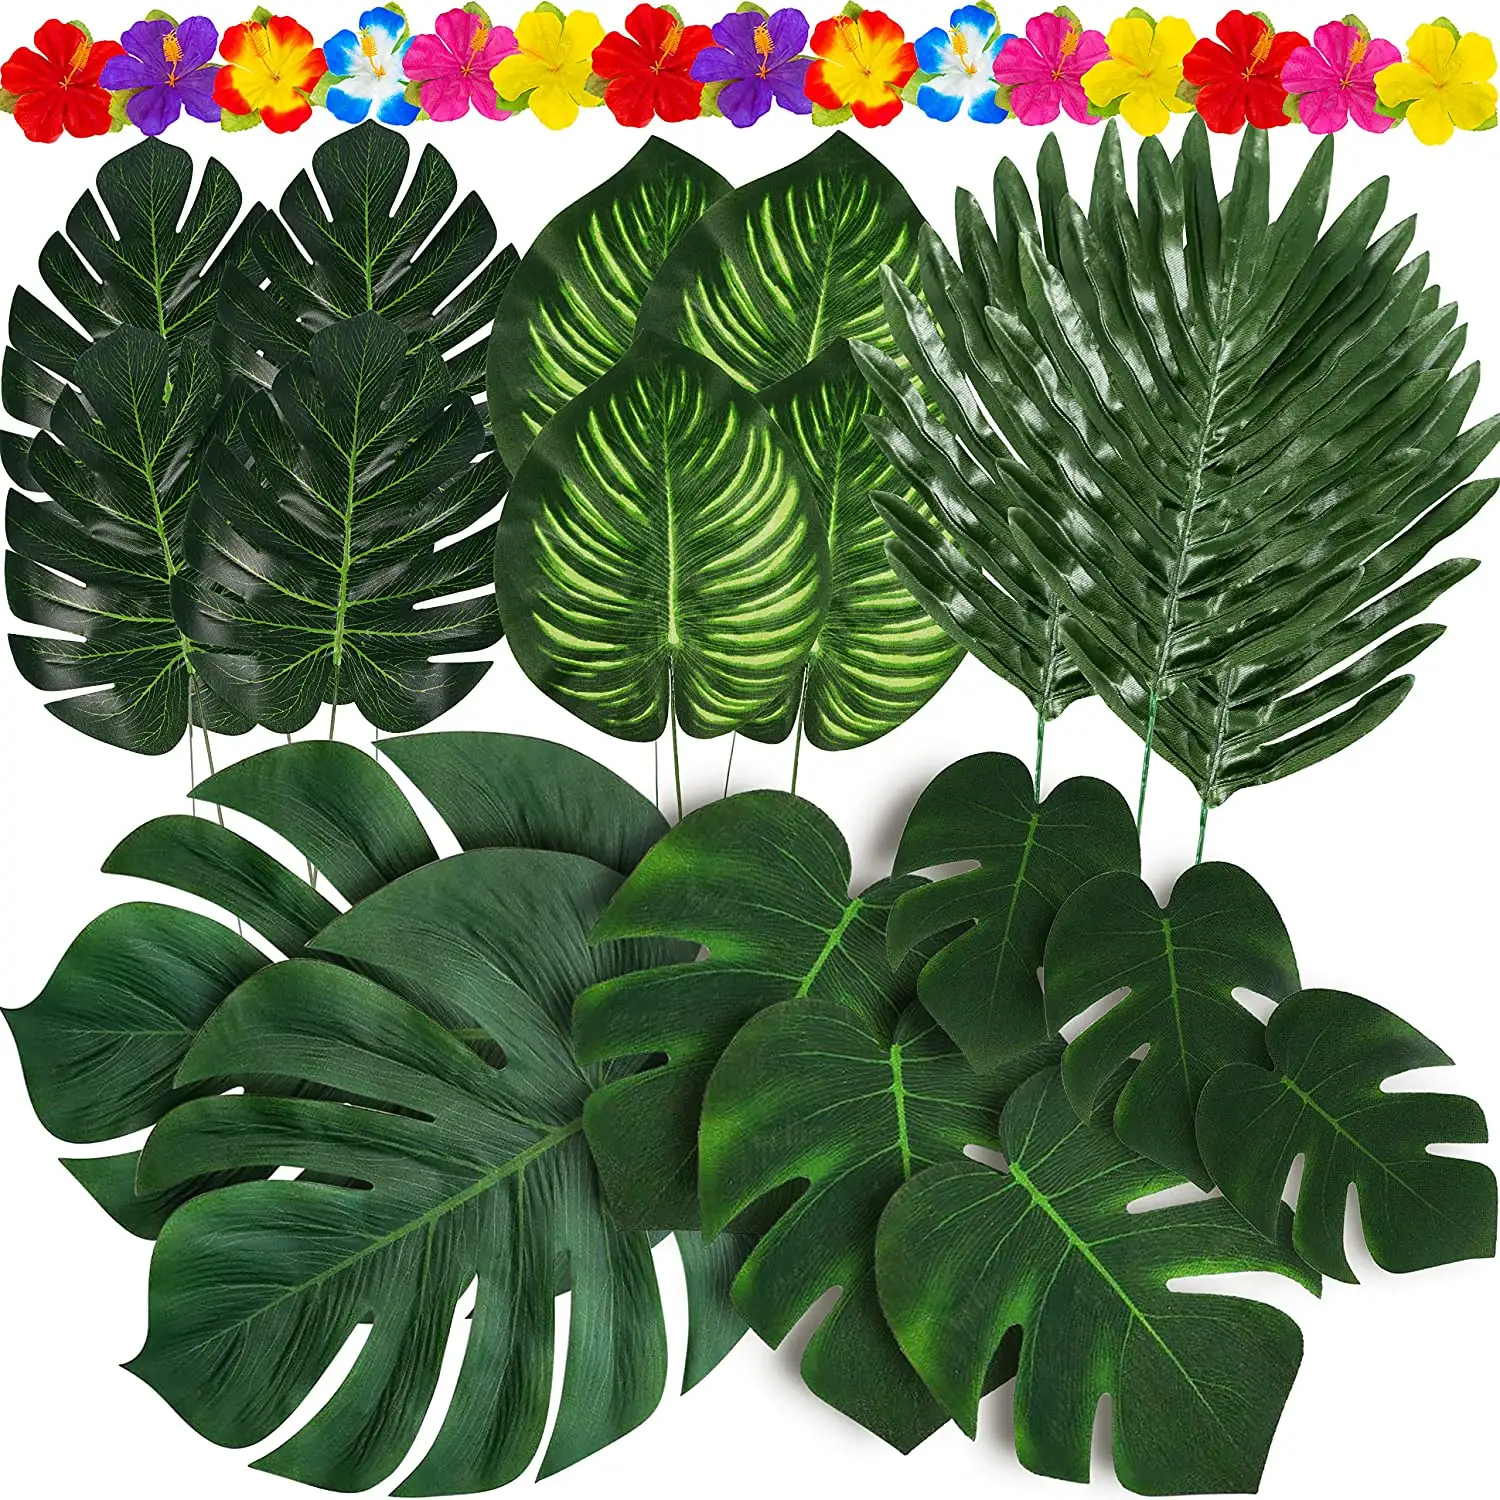 120PCS उष्णकटिबंधीय हथेली पत्तियां पौधों हिबिस्कुस हवाई जाल के लिए कृत्रिम ग्रीन नकली पत्ता सफारी जंगल पार्टी मेज सजावट